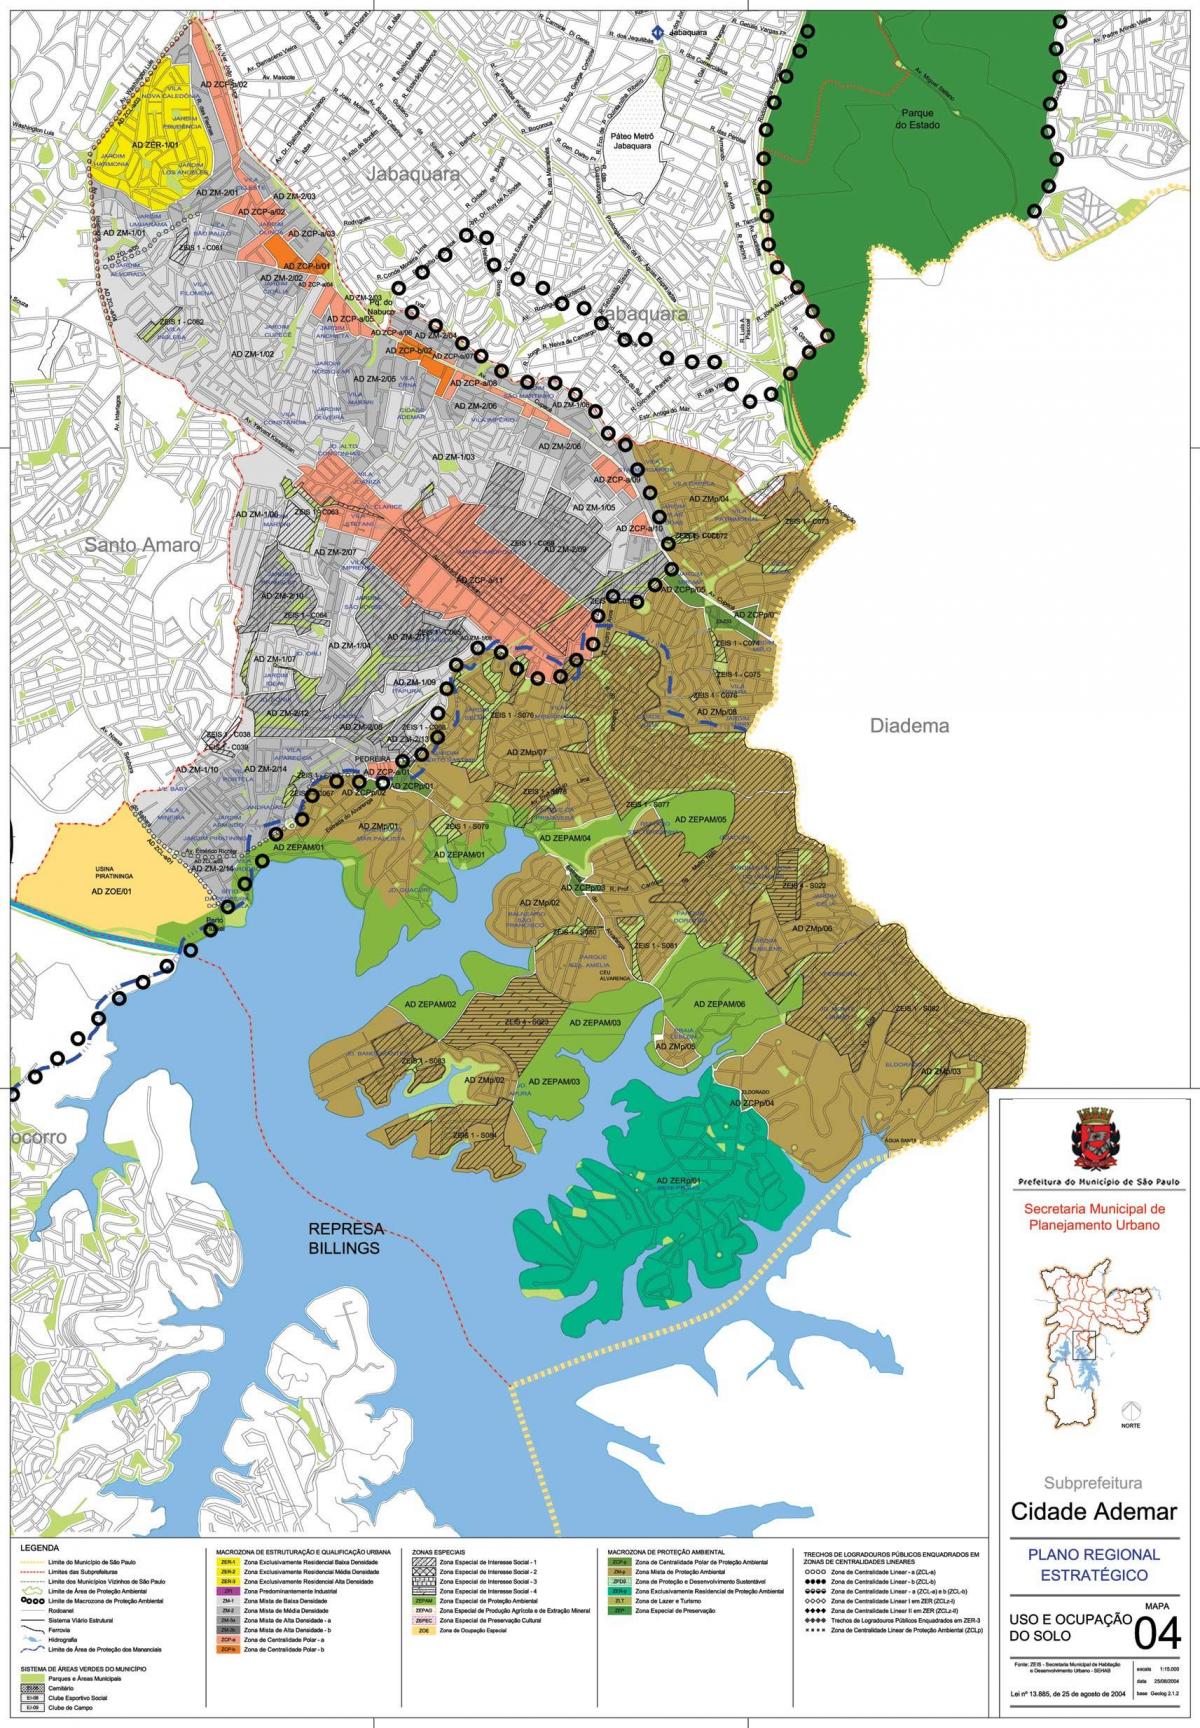 Карта Сидаде Адемаре Сан-Паулу - захват земли